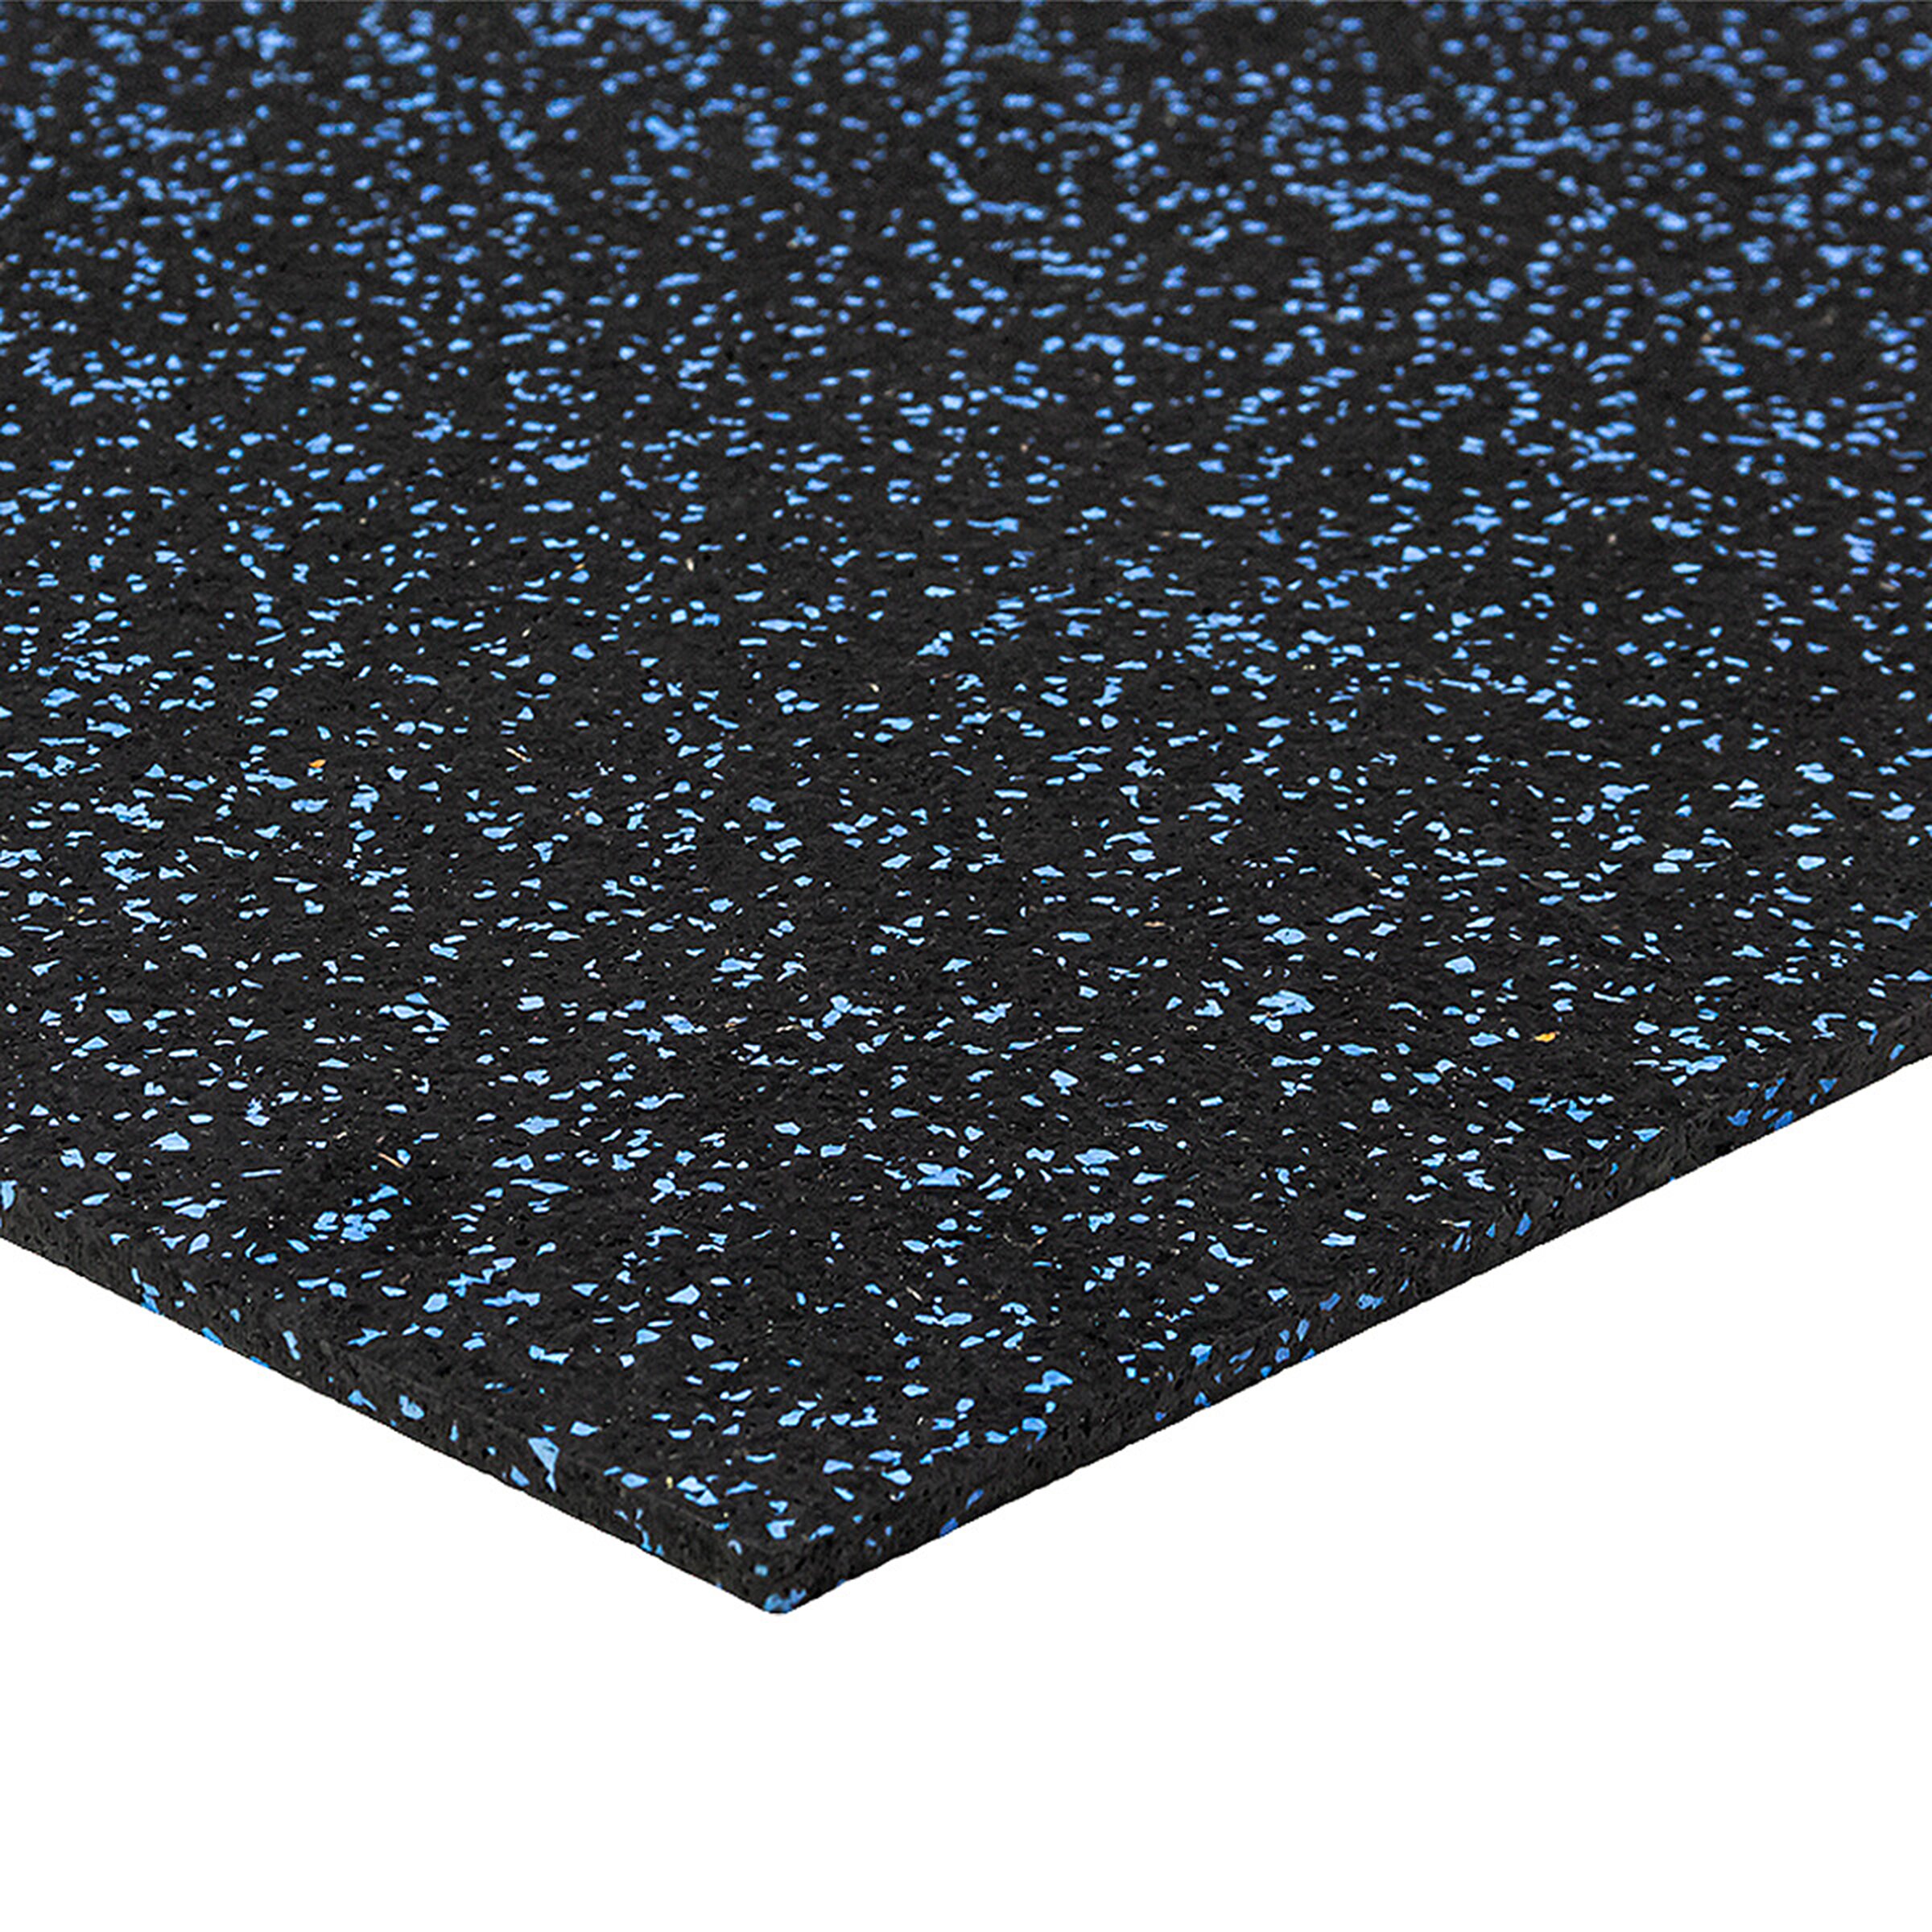 Černo-modrá gumová modulová puzzle dlažba (střed) FLOMA FitFlo SF1050 - délka 50 cm, šířka 50 cm, výška 0,8 cm